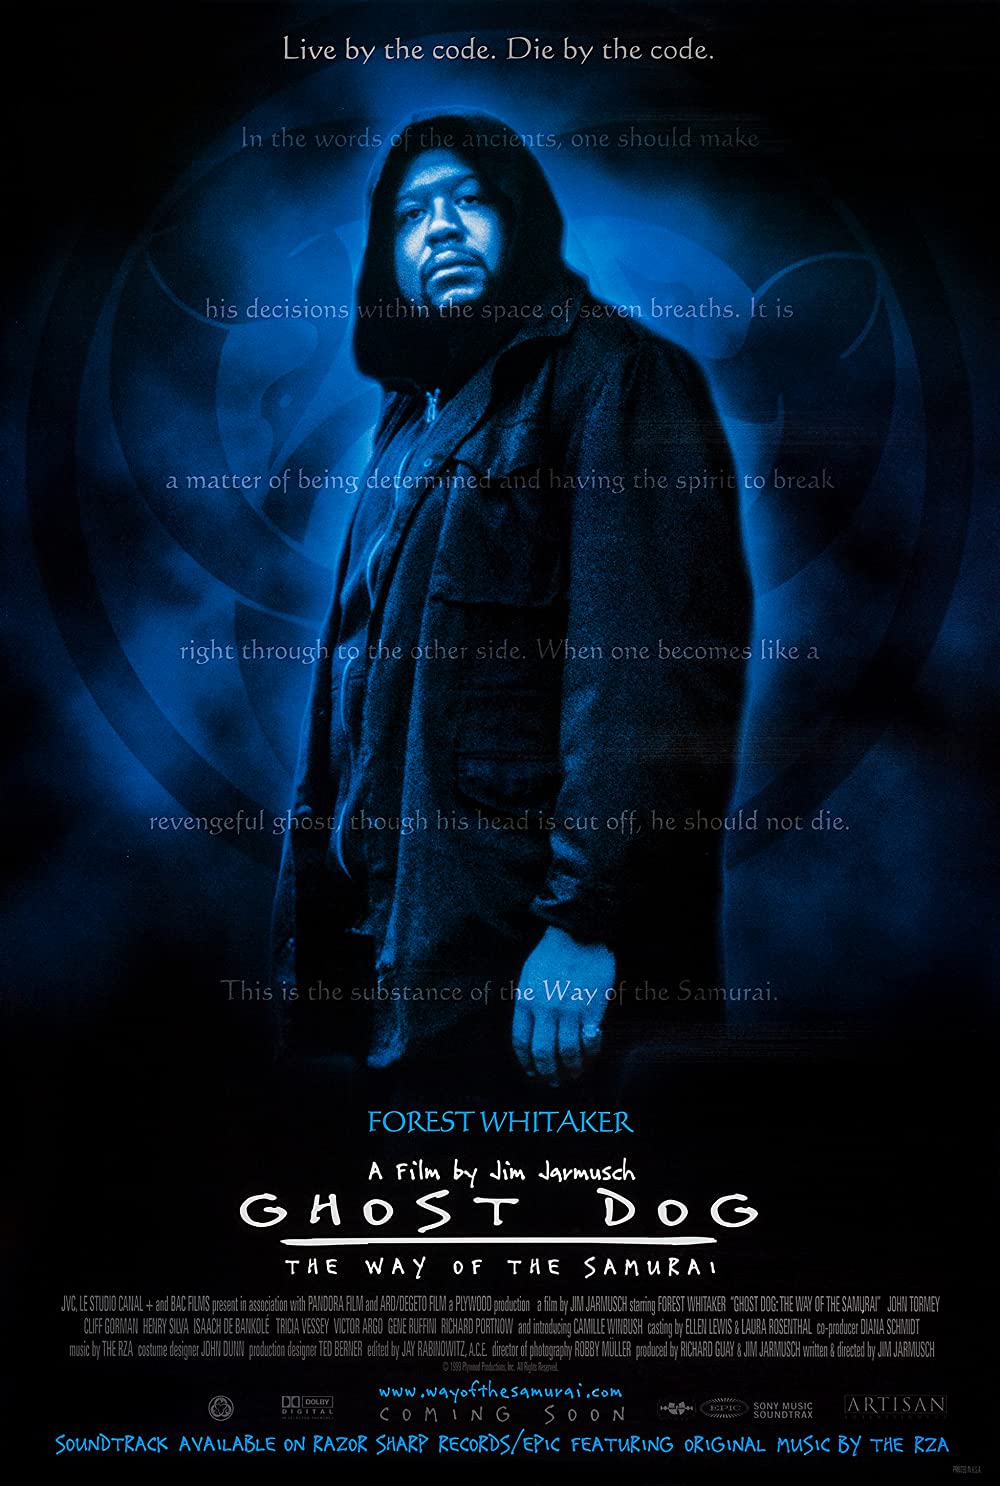 Filmbeschreibung zu Ghost Dog: Der Weg des Samurai